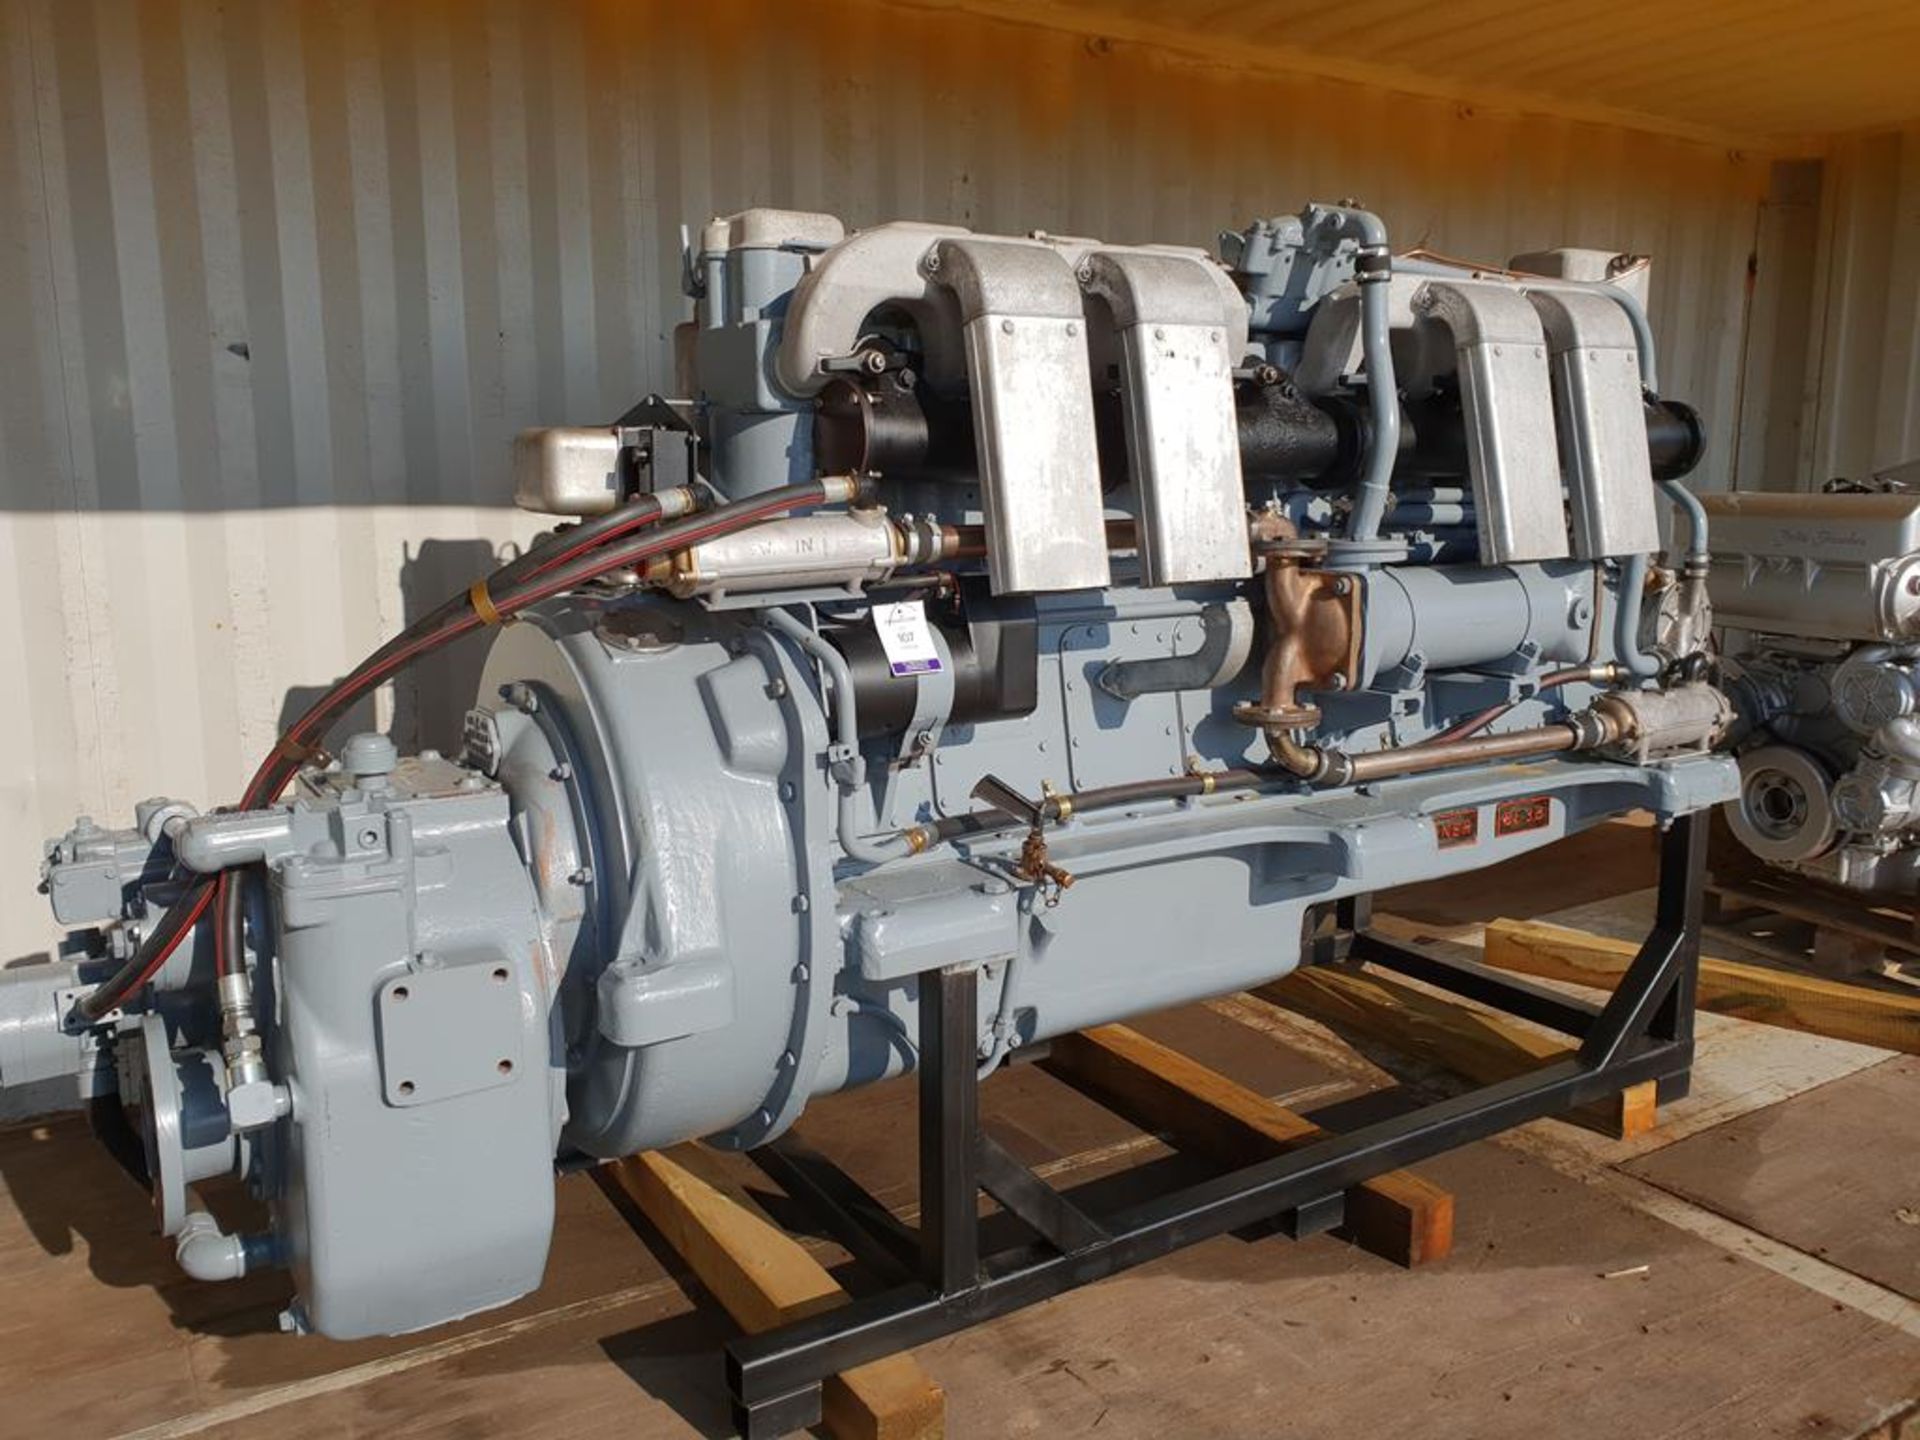 * Gardiner Type SL3B Reconditioned Marine Diesel Engine in Gearbox